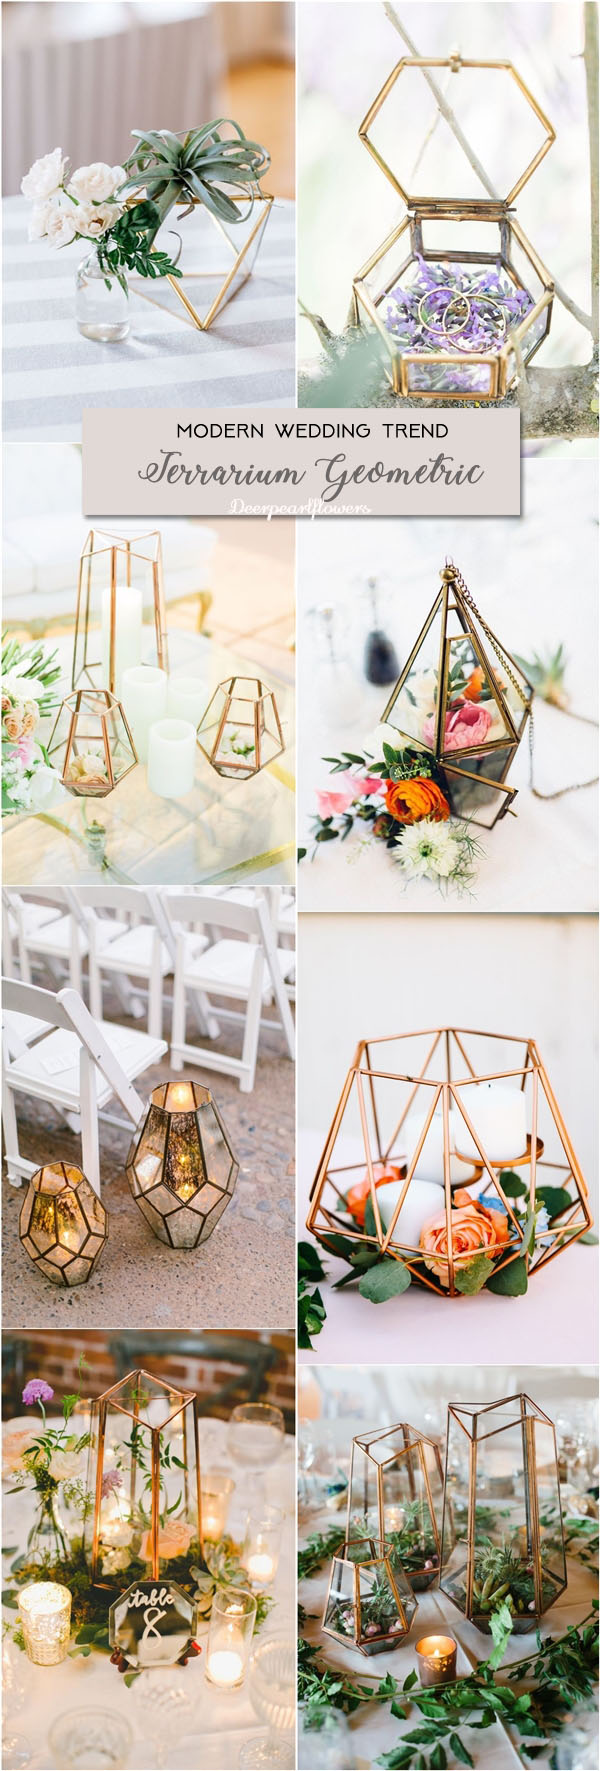 terrarium geometric wedding ideas for modern weddings